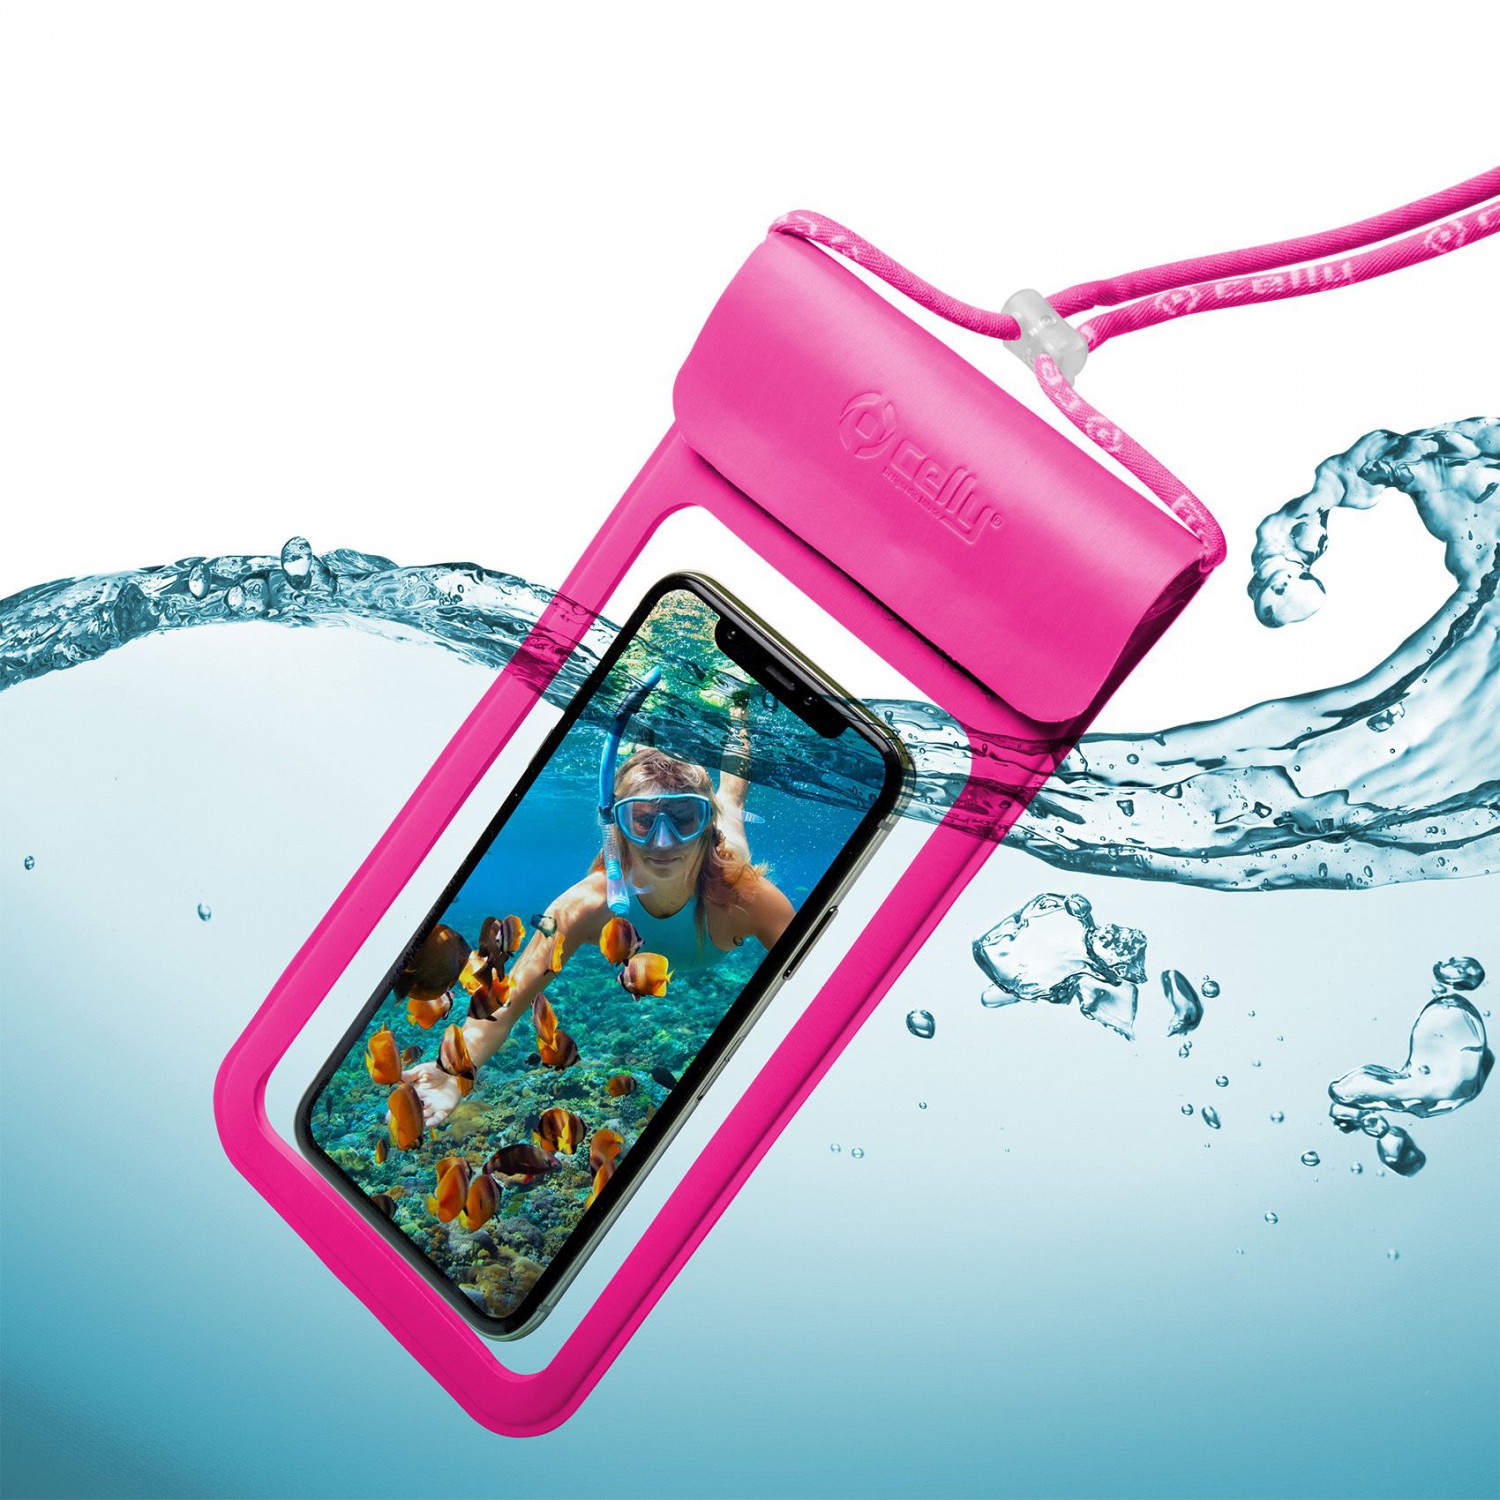 Univerzální voděodolné pouzdro CELLY Splash Bag 2019 pro telefony 6,5", růžové